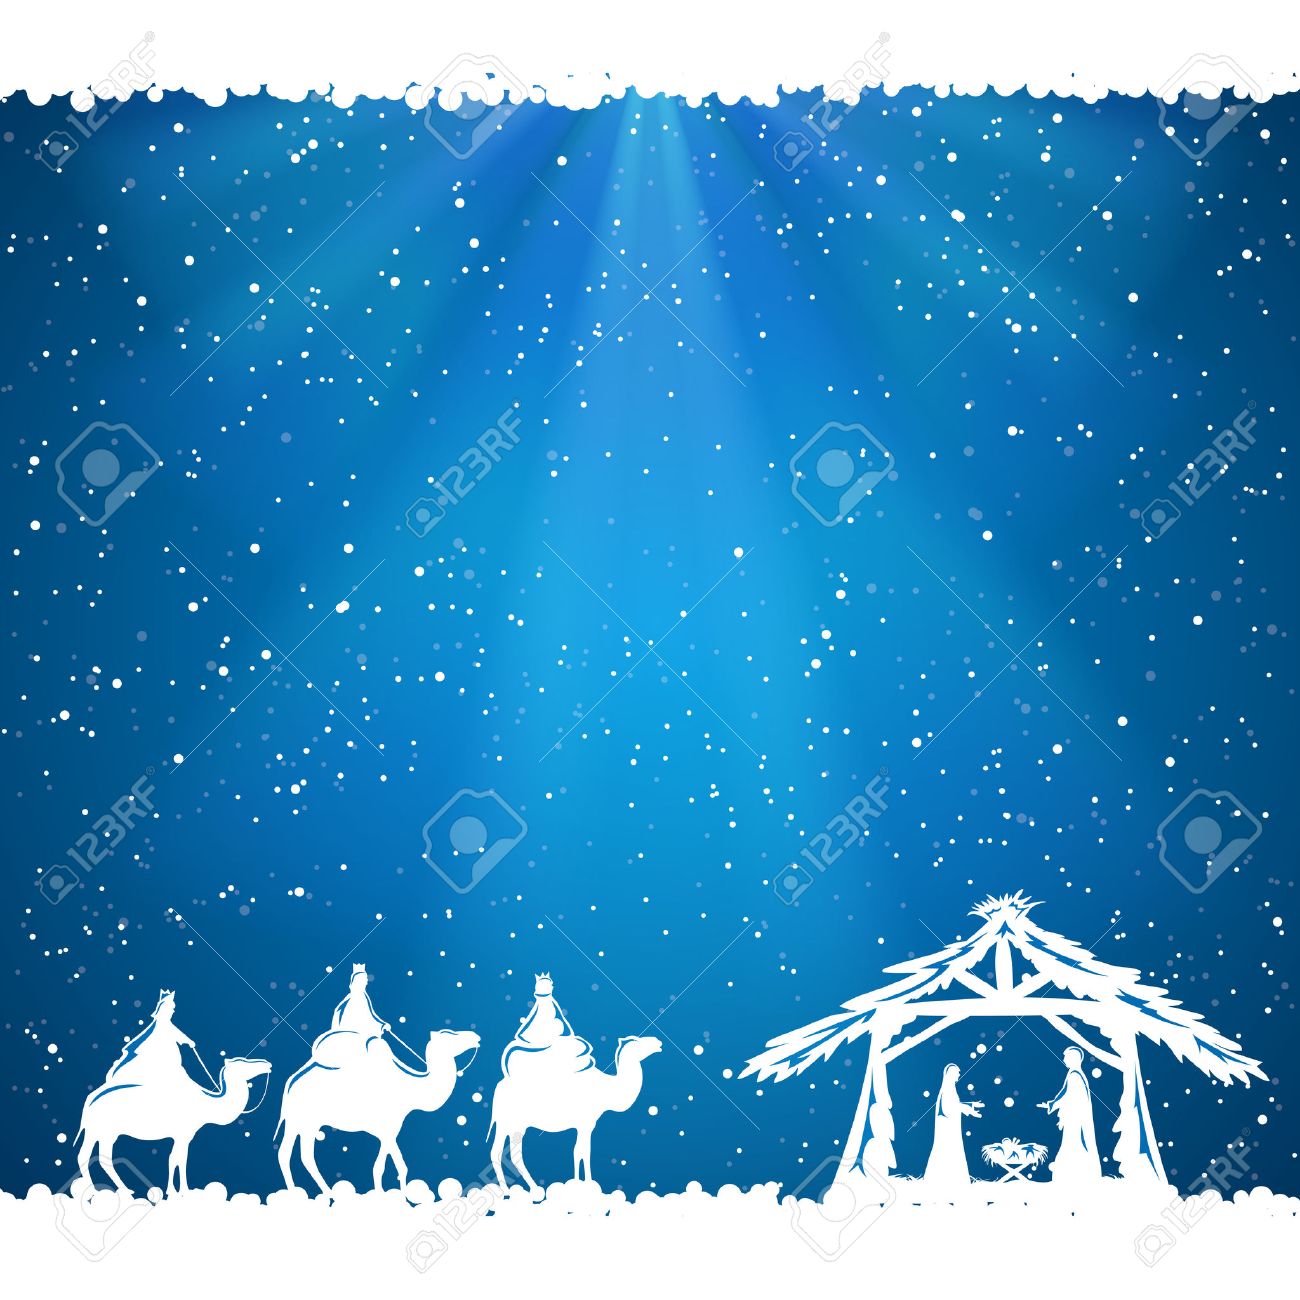 Christian Christmas Scene On Blue Background Illustration